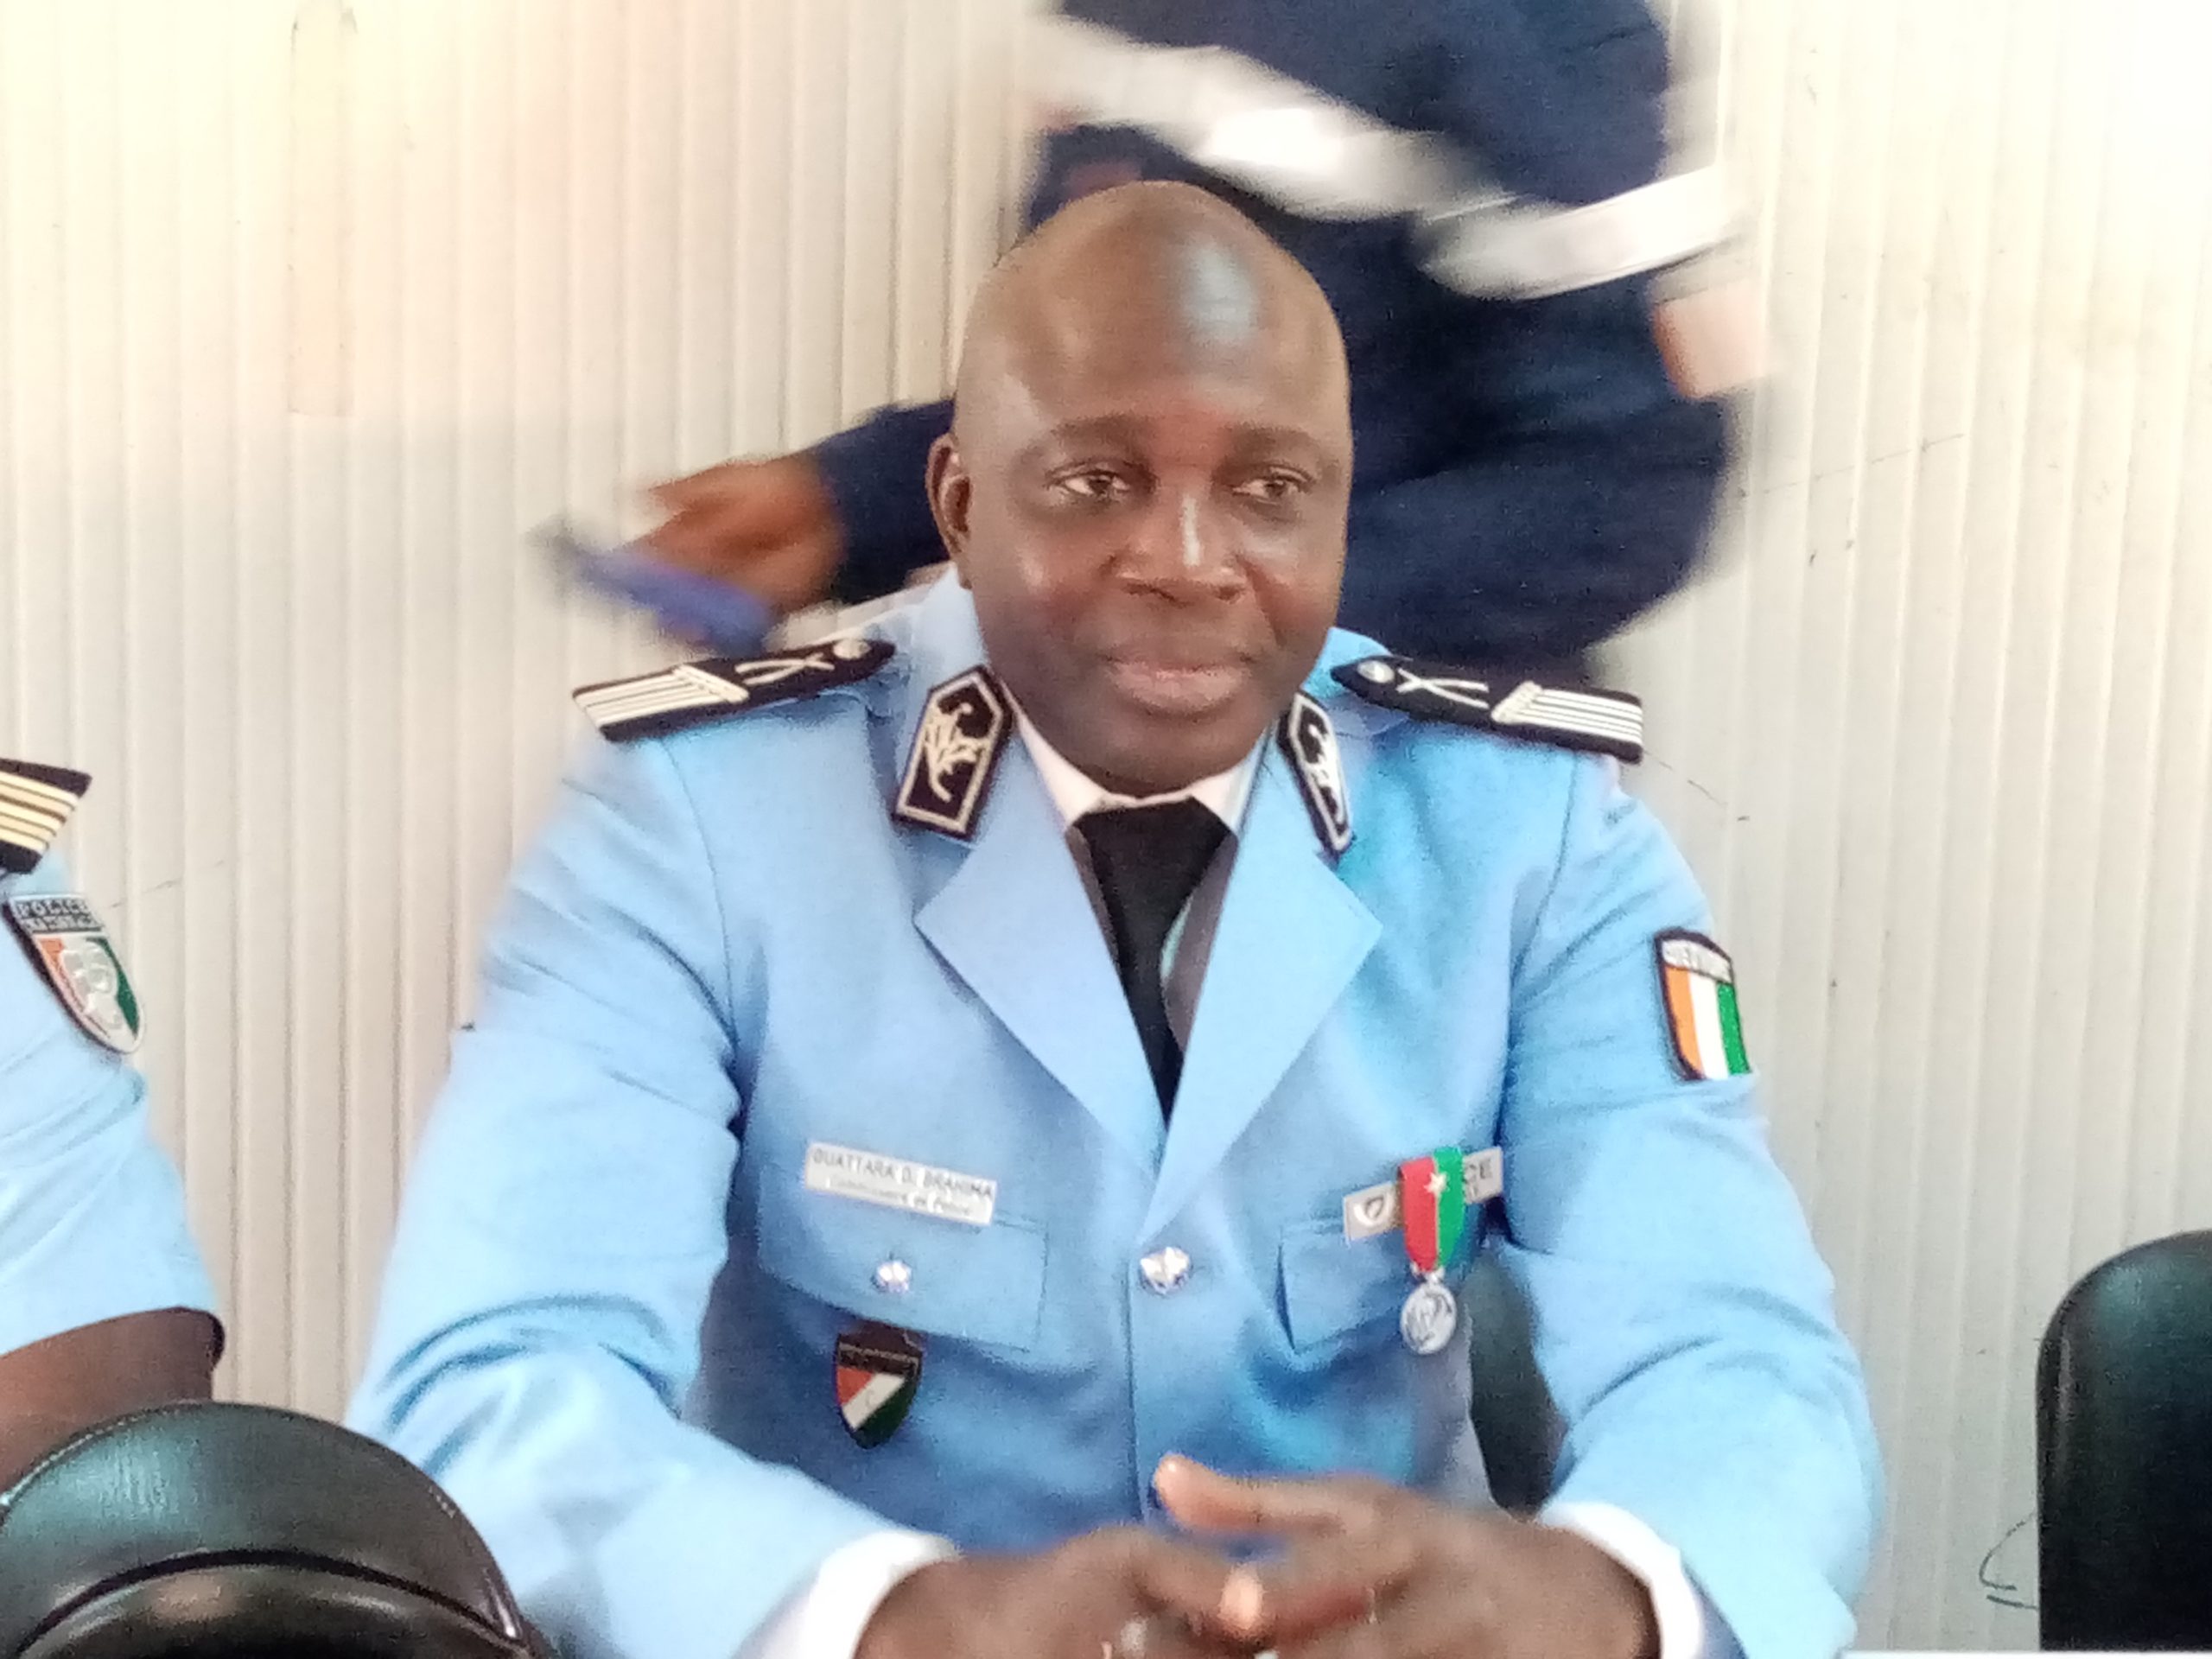 Man / Affaire "Bagarre entre policiers et gardes pénitentiaires": Le préfet de police réagit